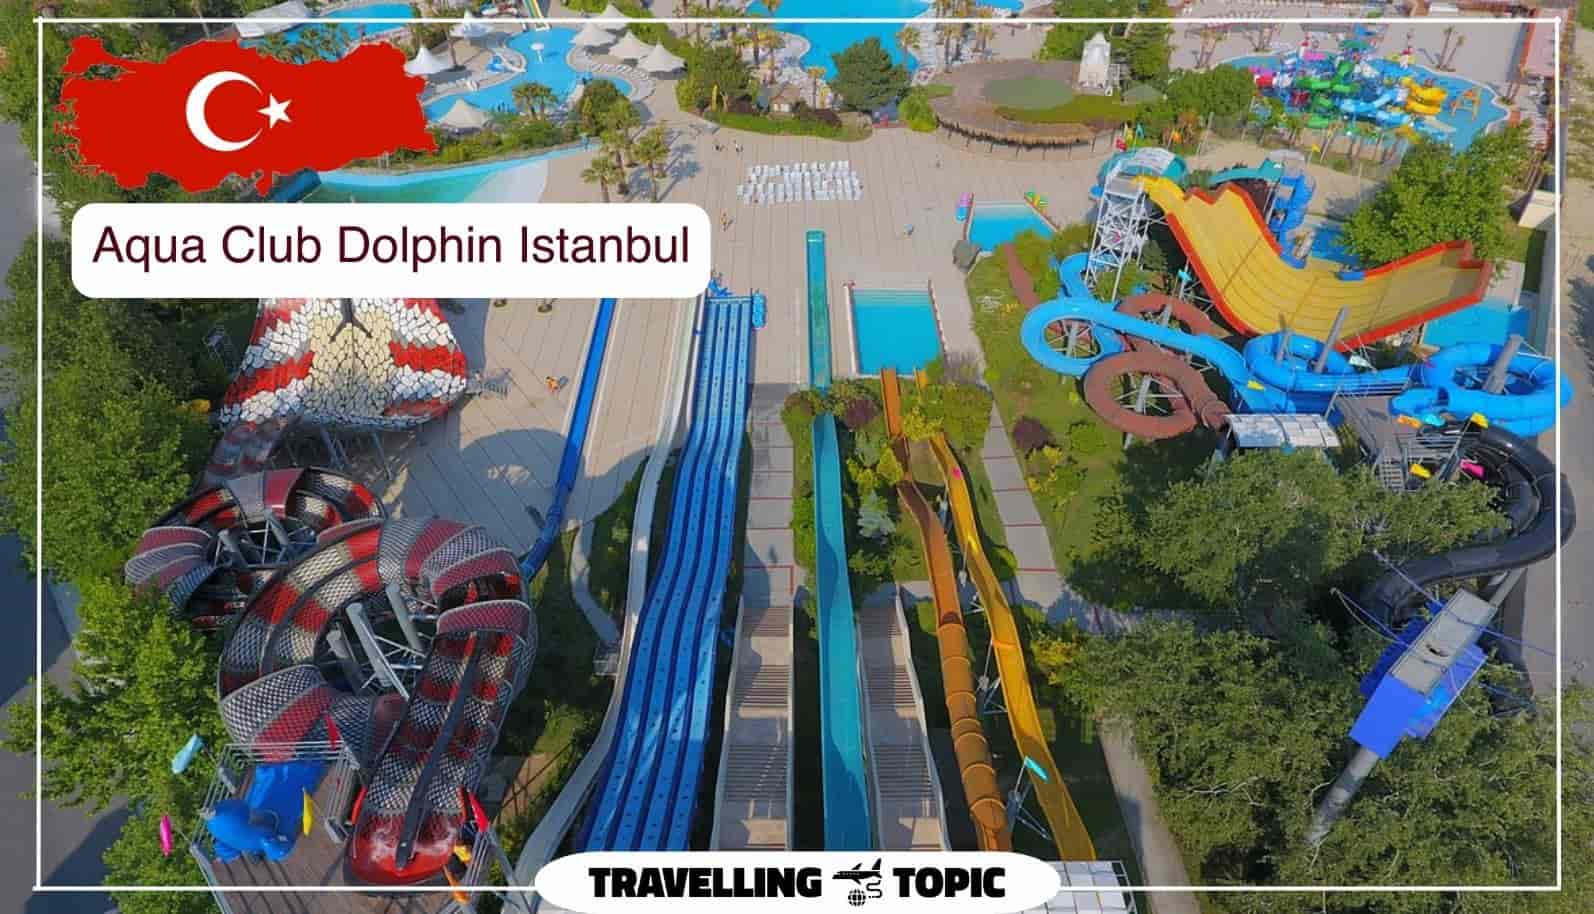 Aqua Club Dolphin Istanbul